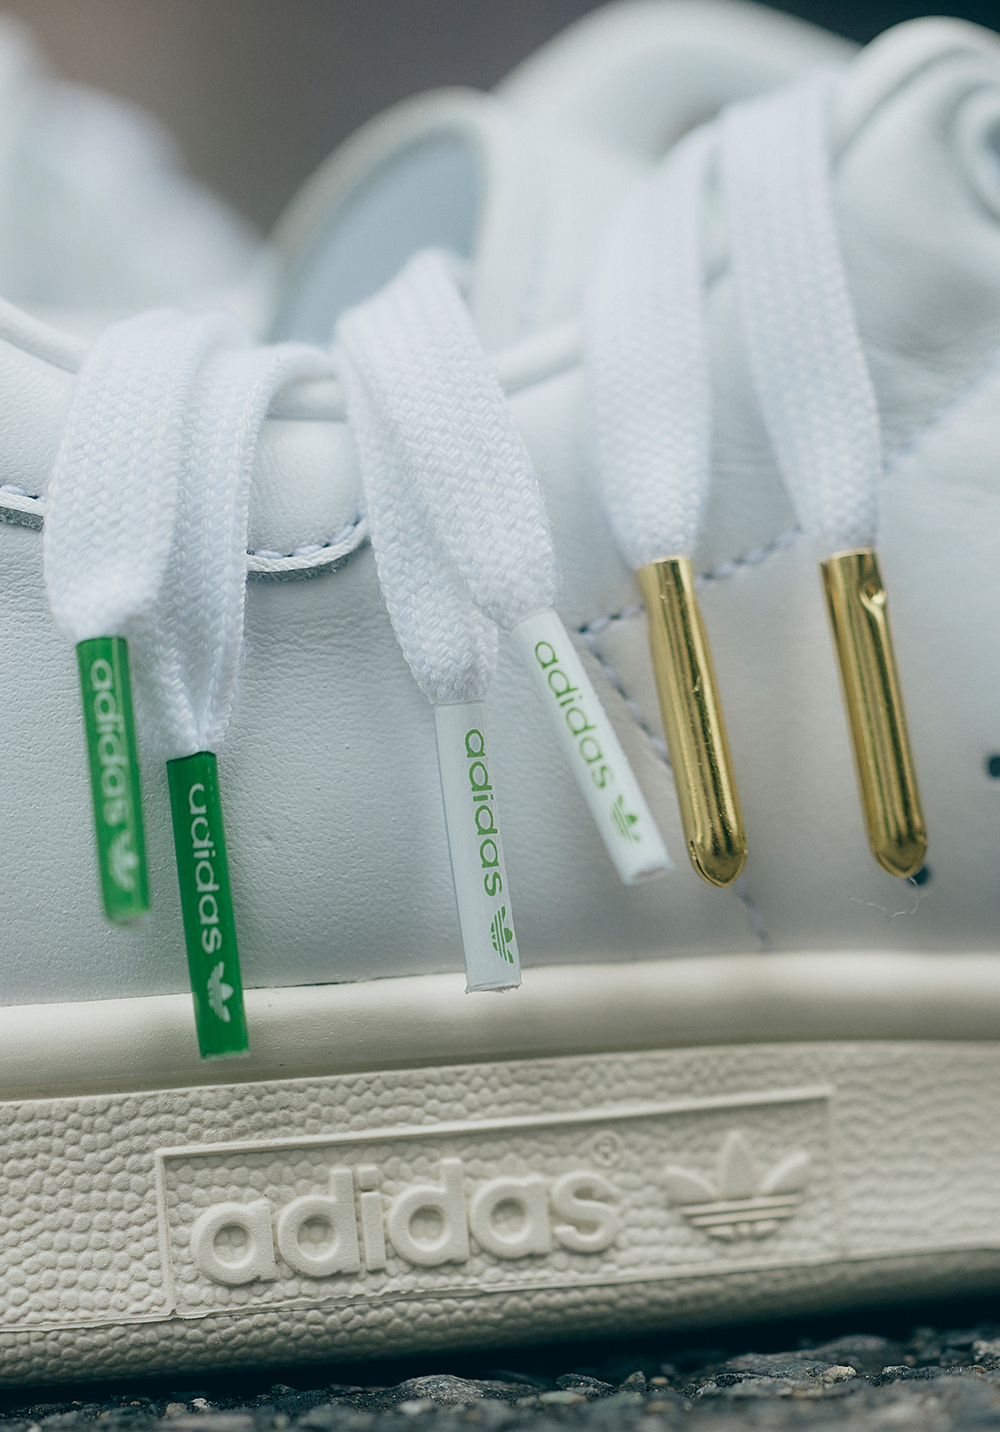 【国内 5/18 発売】BILLY’S EXCLUSIVE adidas Originals STAN SMITH MINIMAL “White/Green” (ビリーズ 限定 アディダス オリジナルス スタンスミス ミニマル “ホワイト/グリーン”) [ID5134]